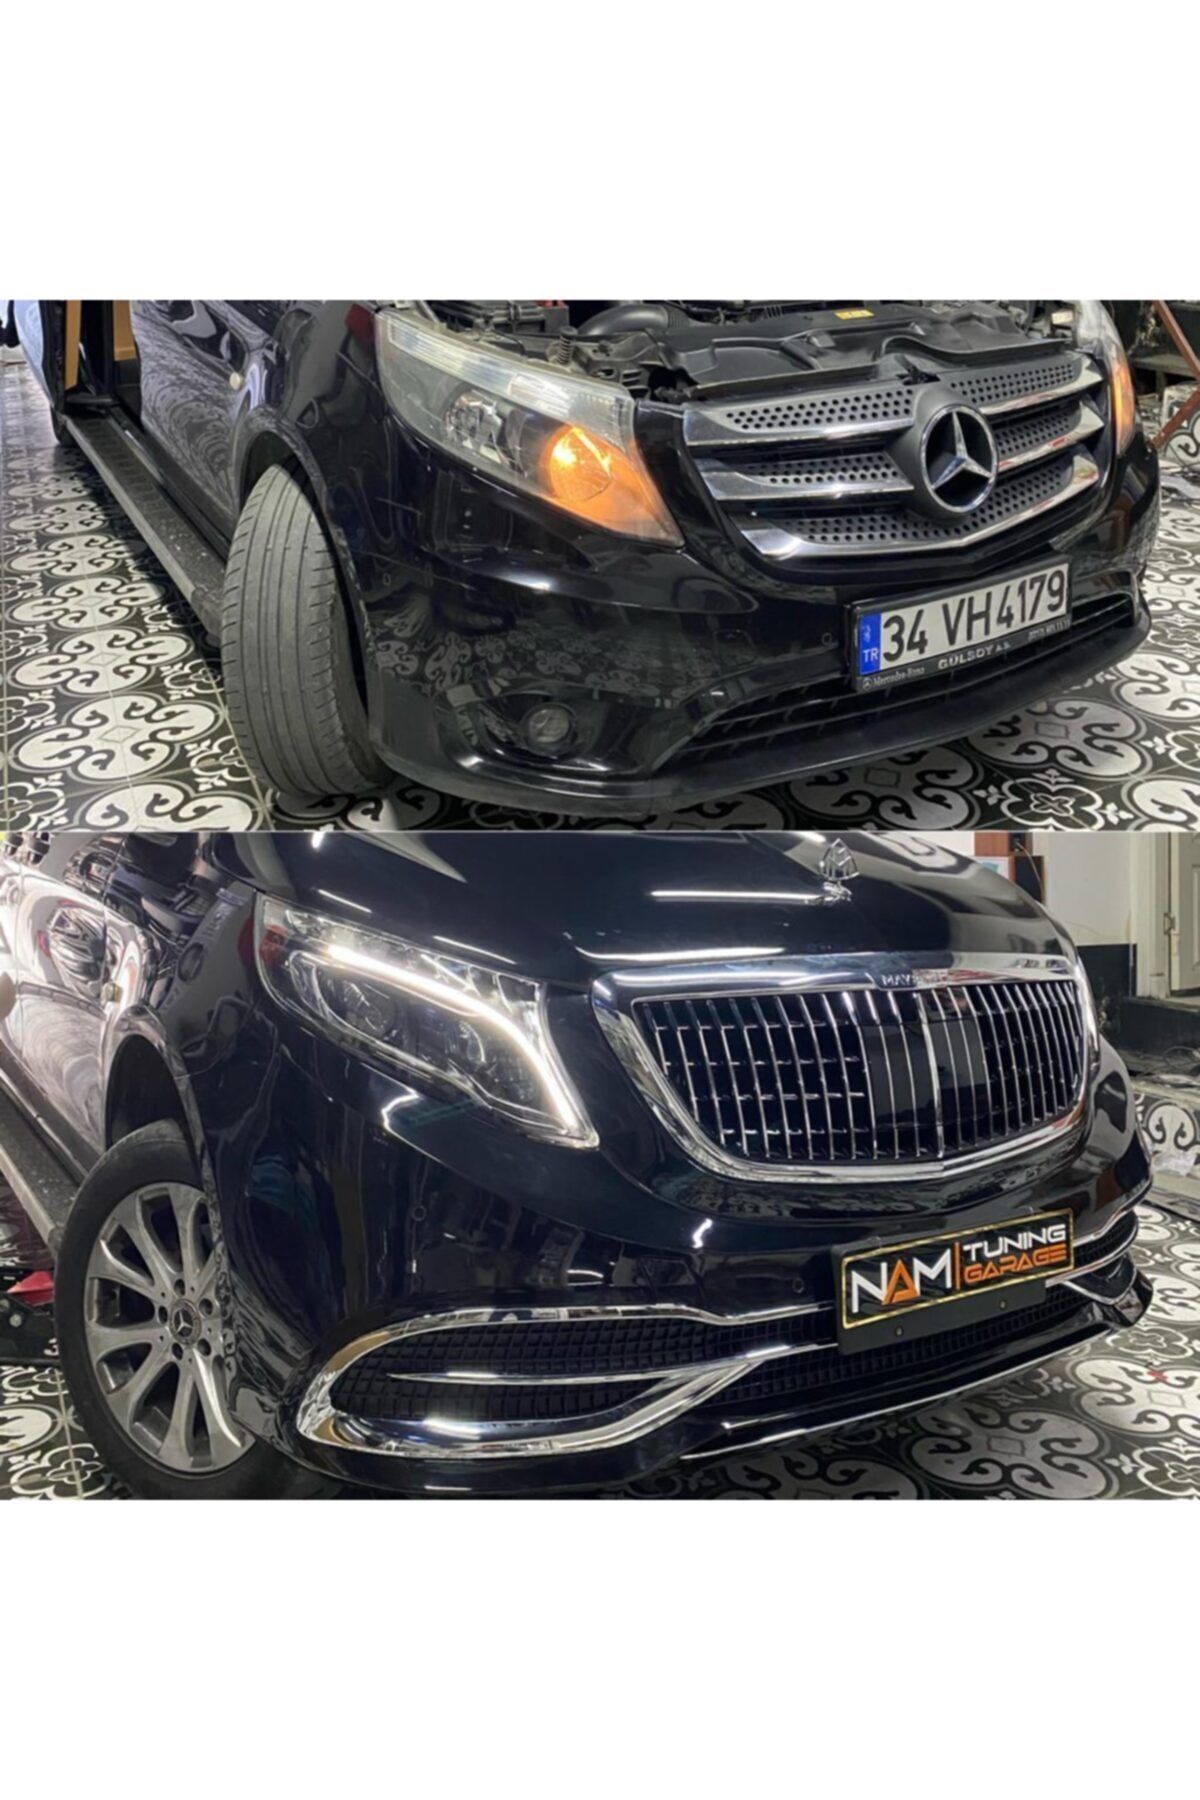 NamTuning Mercedes W447 Vito Maybach Panjur 2014-2021